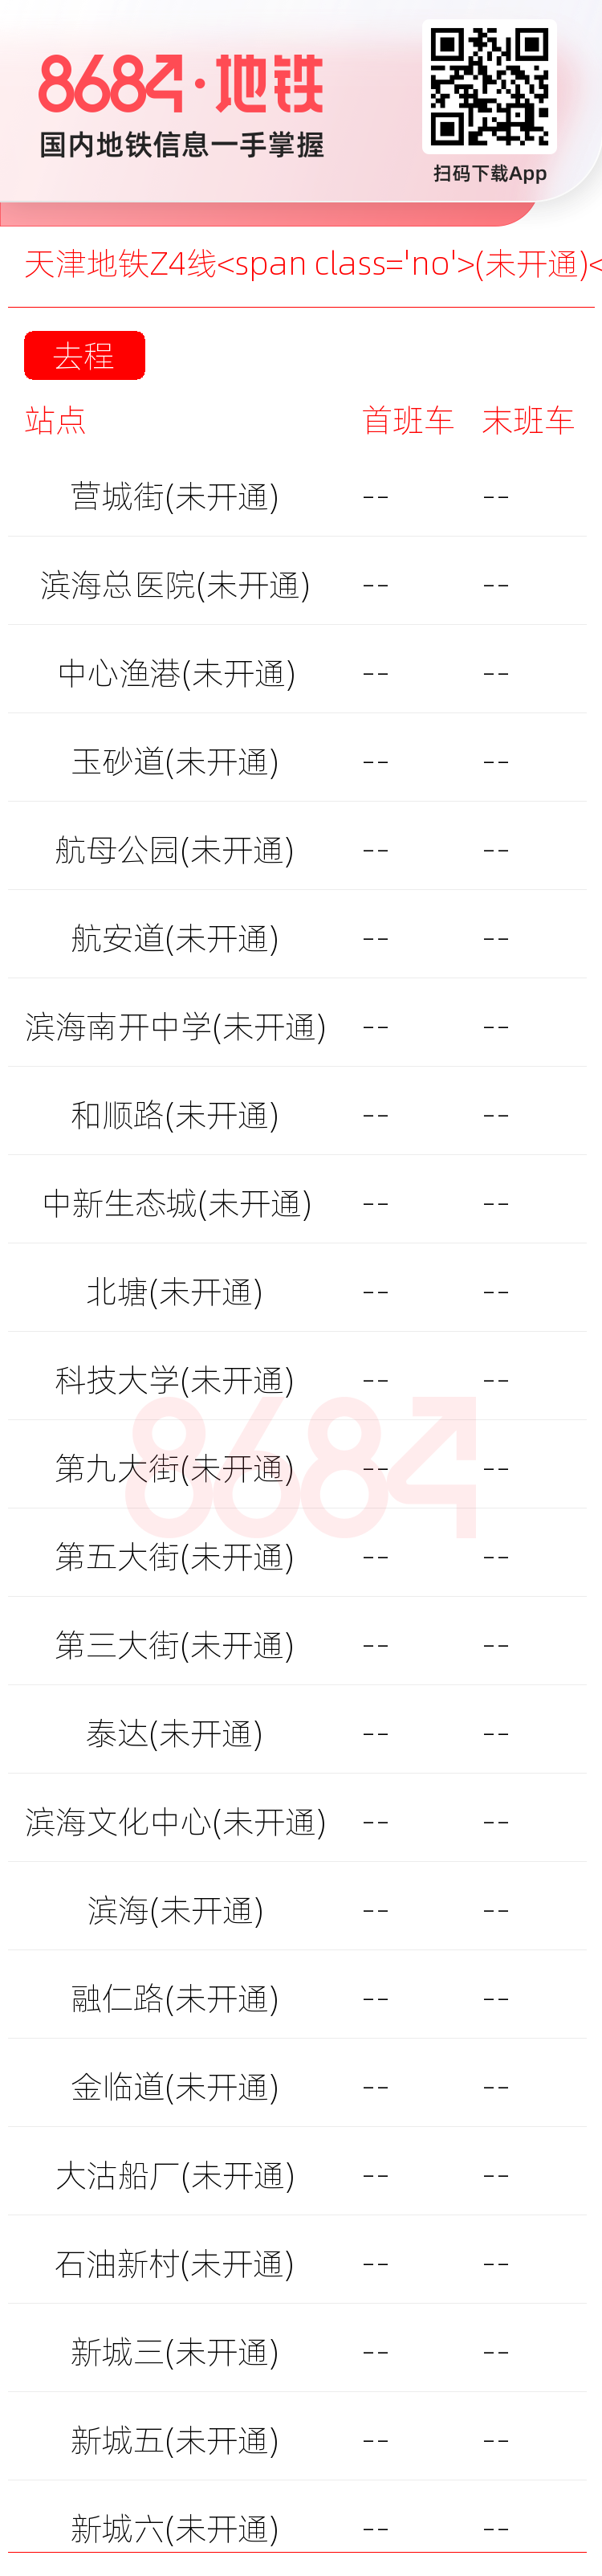 天津地铁Z4线<span class='no'>(未开通)</span>运营时间表